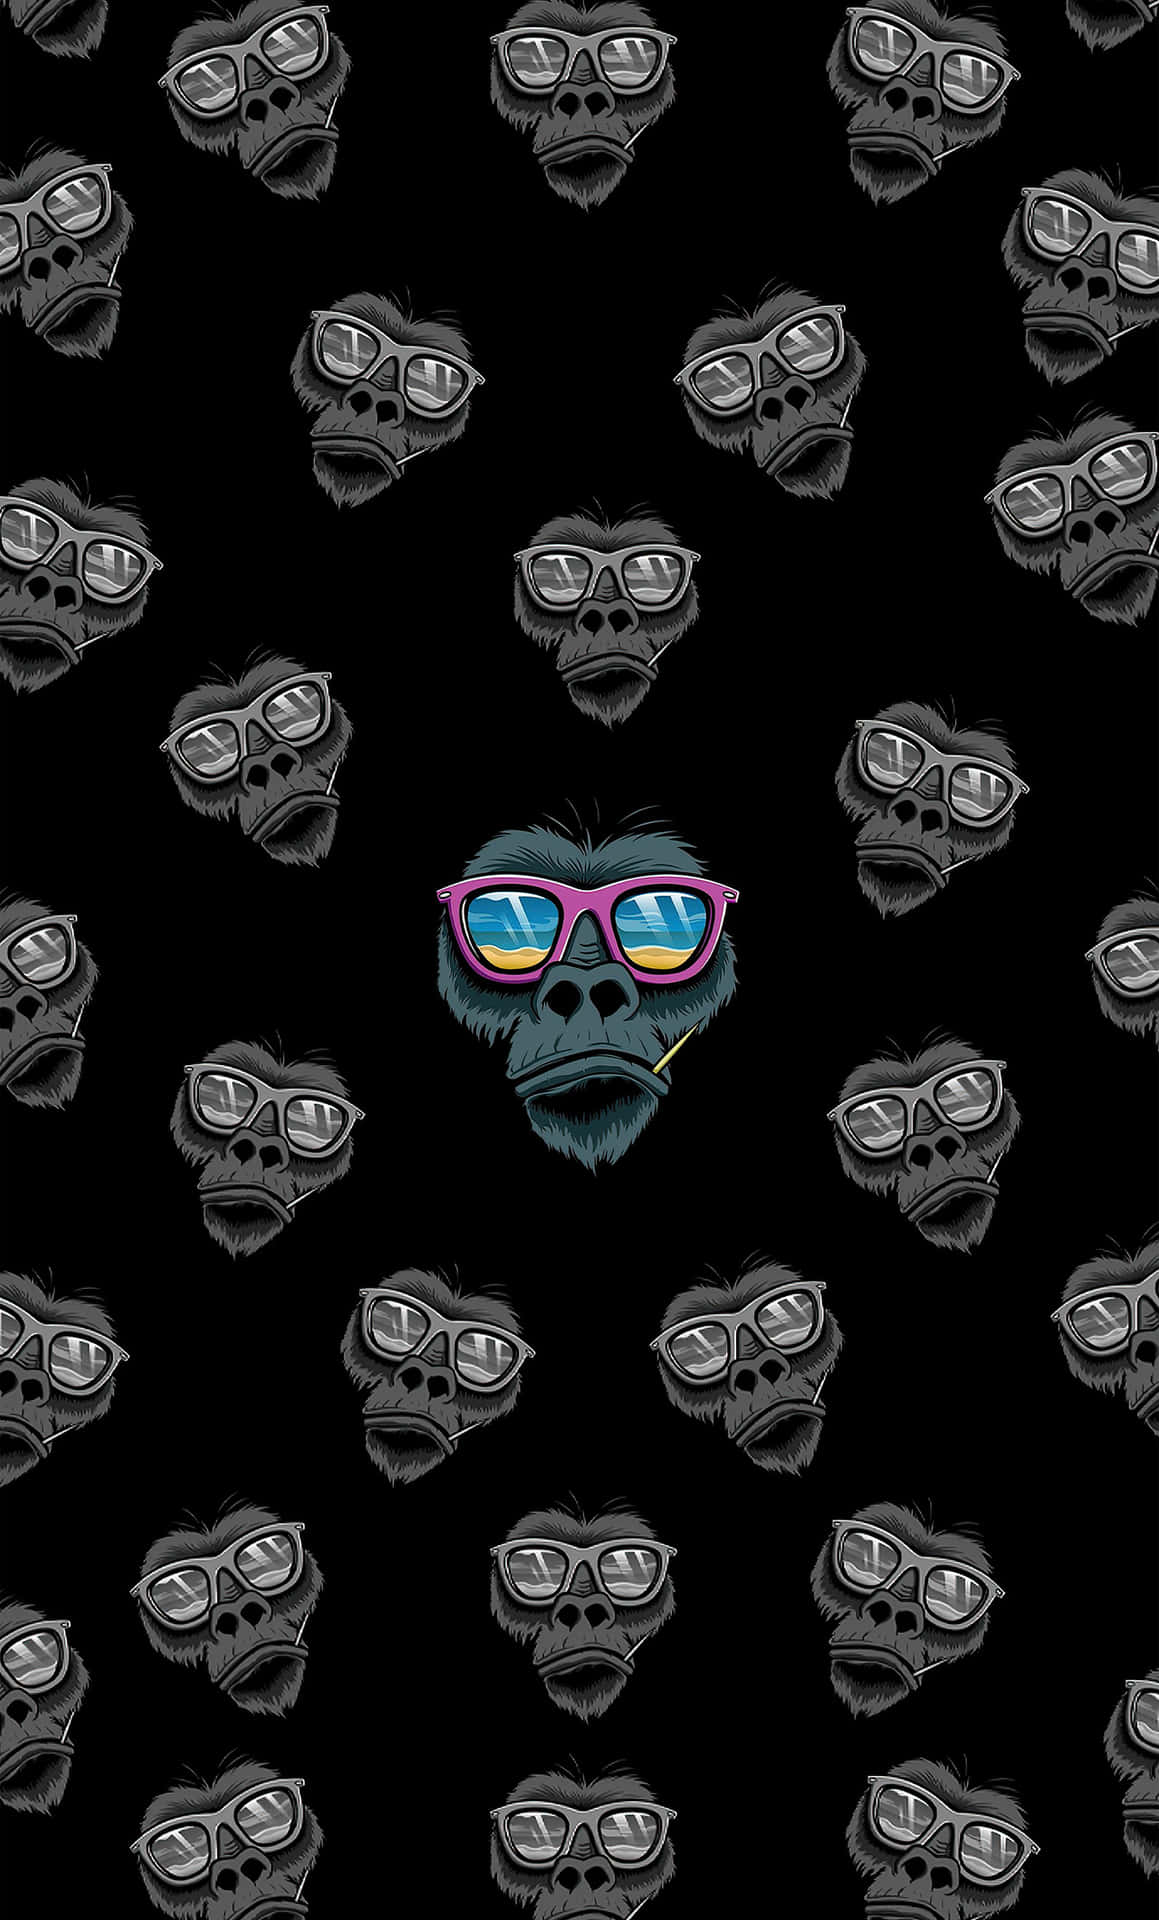 Einschwarzer Hintergrund Mit Einem Schwarzen Gorilla Mit Brille. Wallpaper